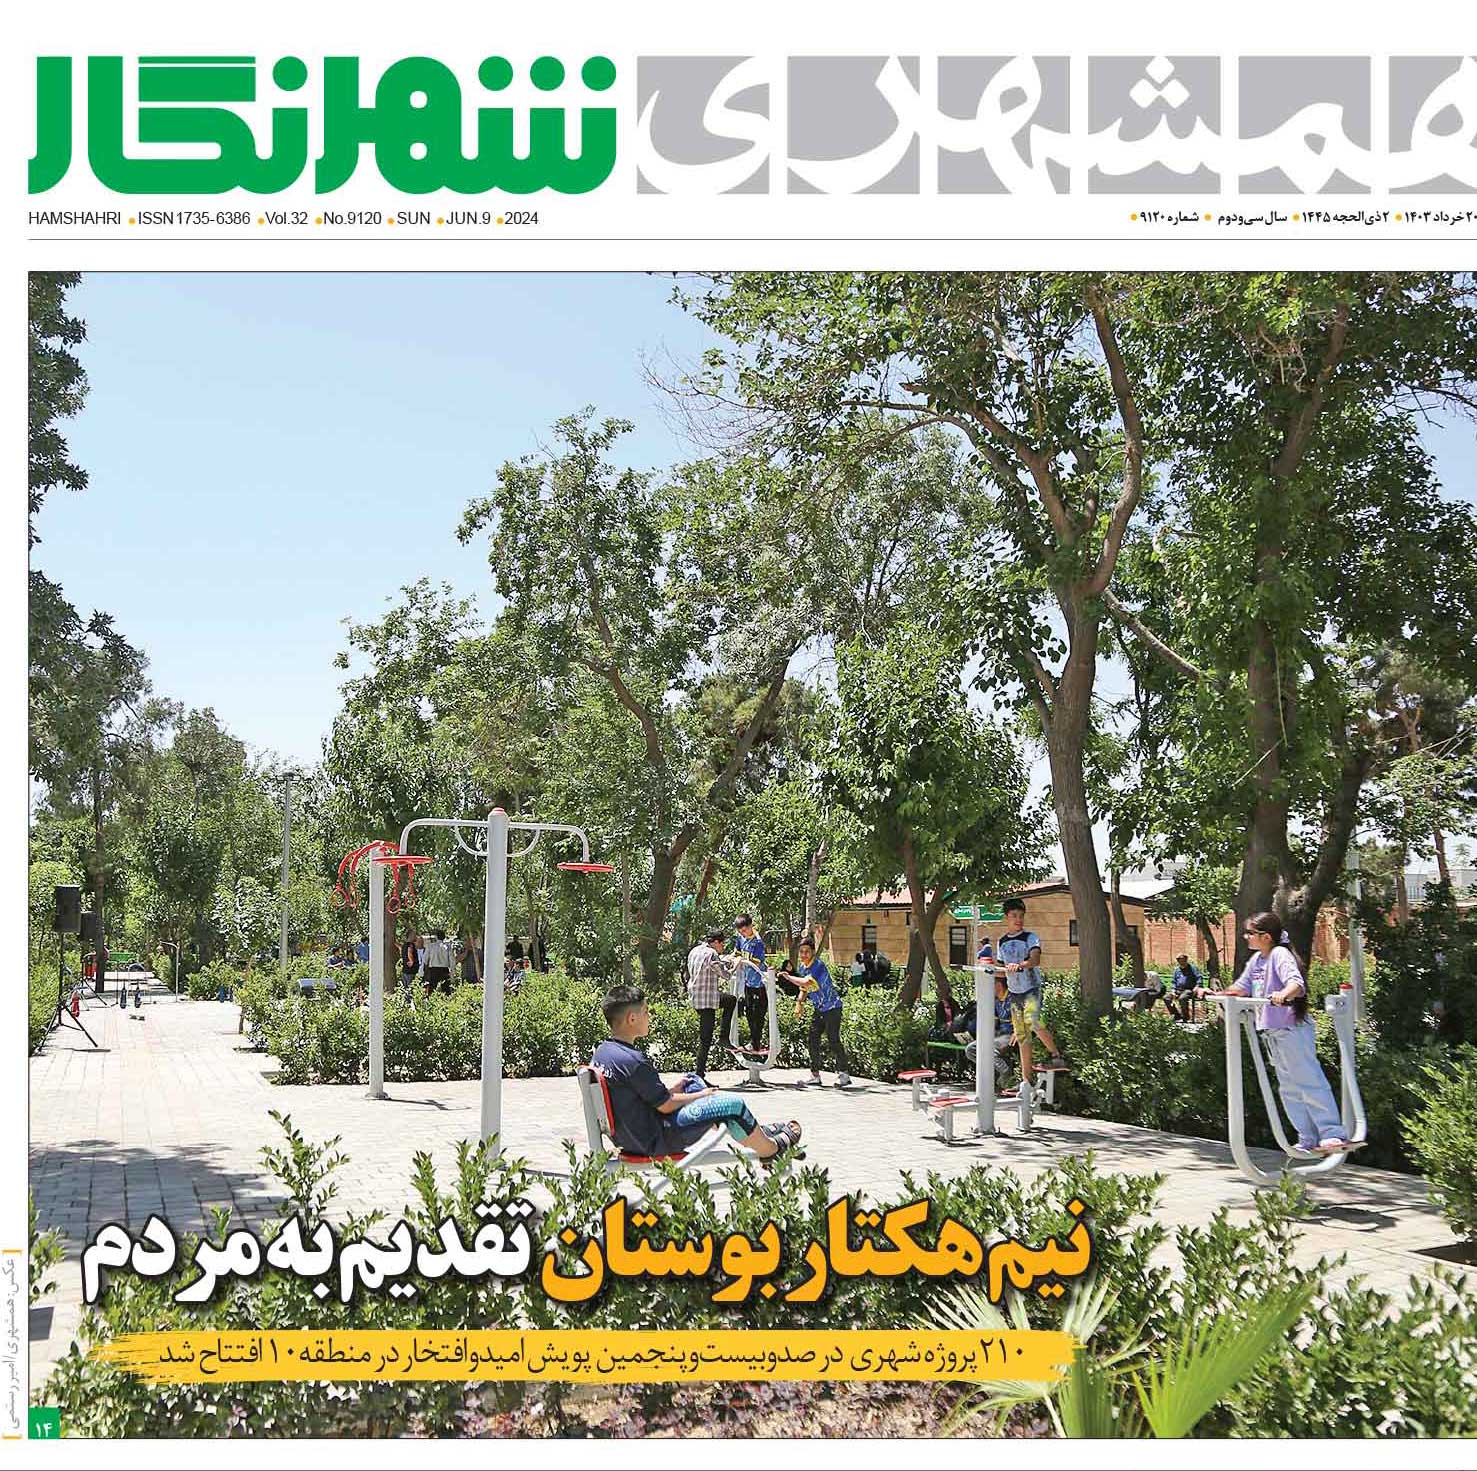 تیتر عجیب برای افتتاح یک پارک در تهران: مگر از جیب پدرتان خرج کرده‌اید؟